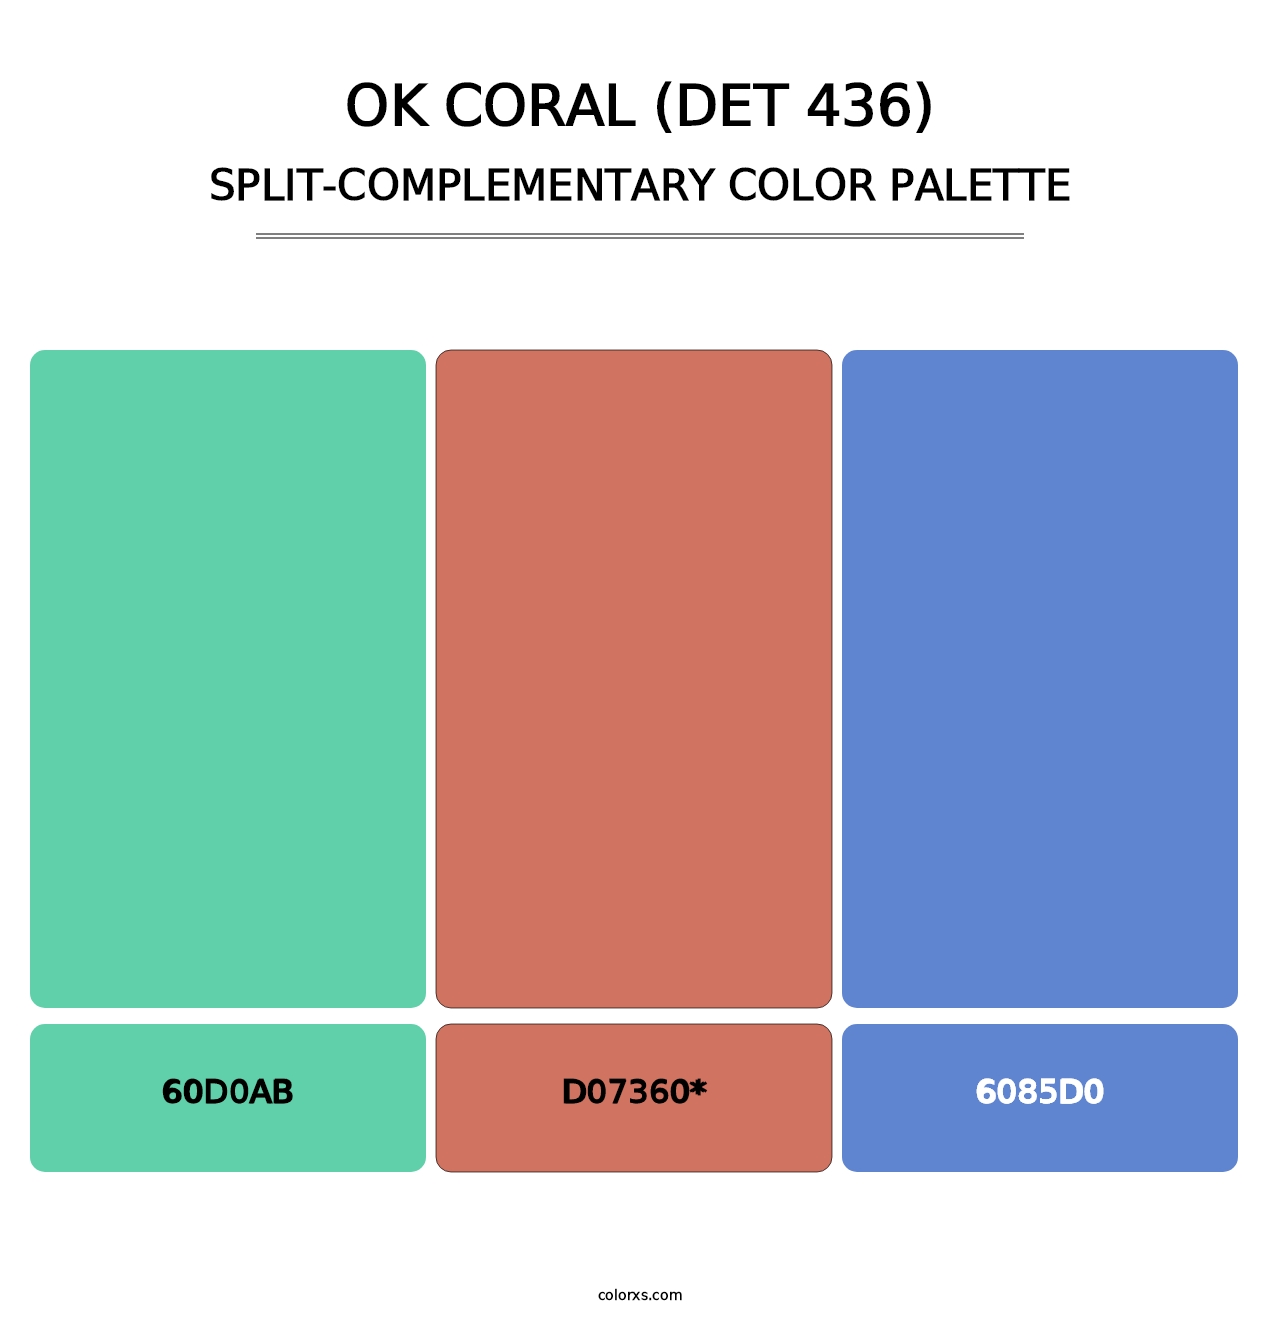 OK Coral (DET 436) - Split-Complementary Color Palette